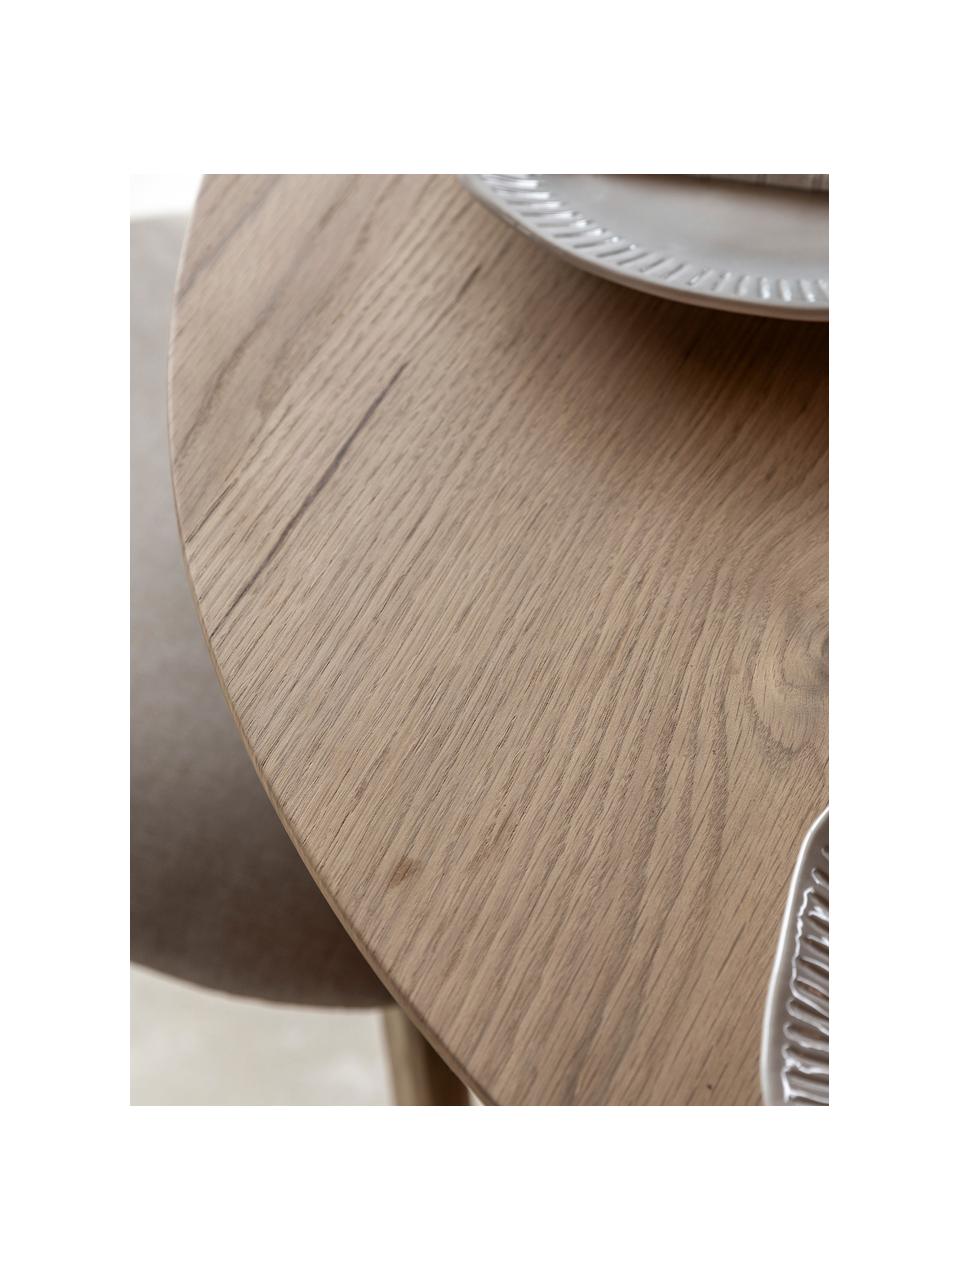 Kulatý jídelní stůl z dubového dřeva Hatfield, Ø 110 cm, Dubové dřevo, Ø 110 cm